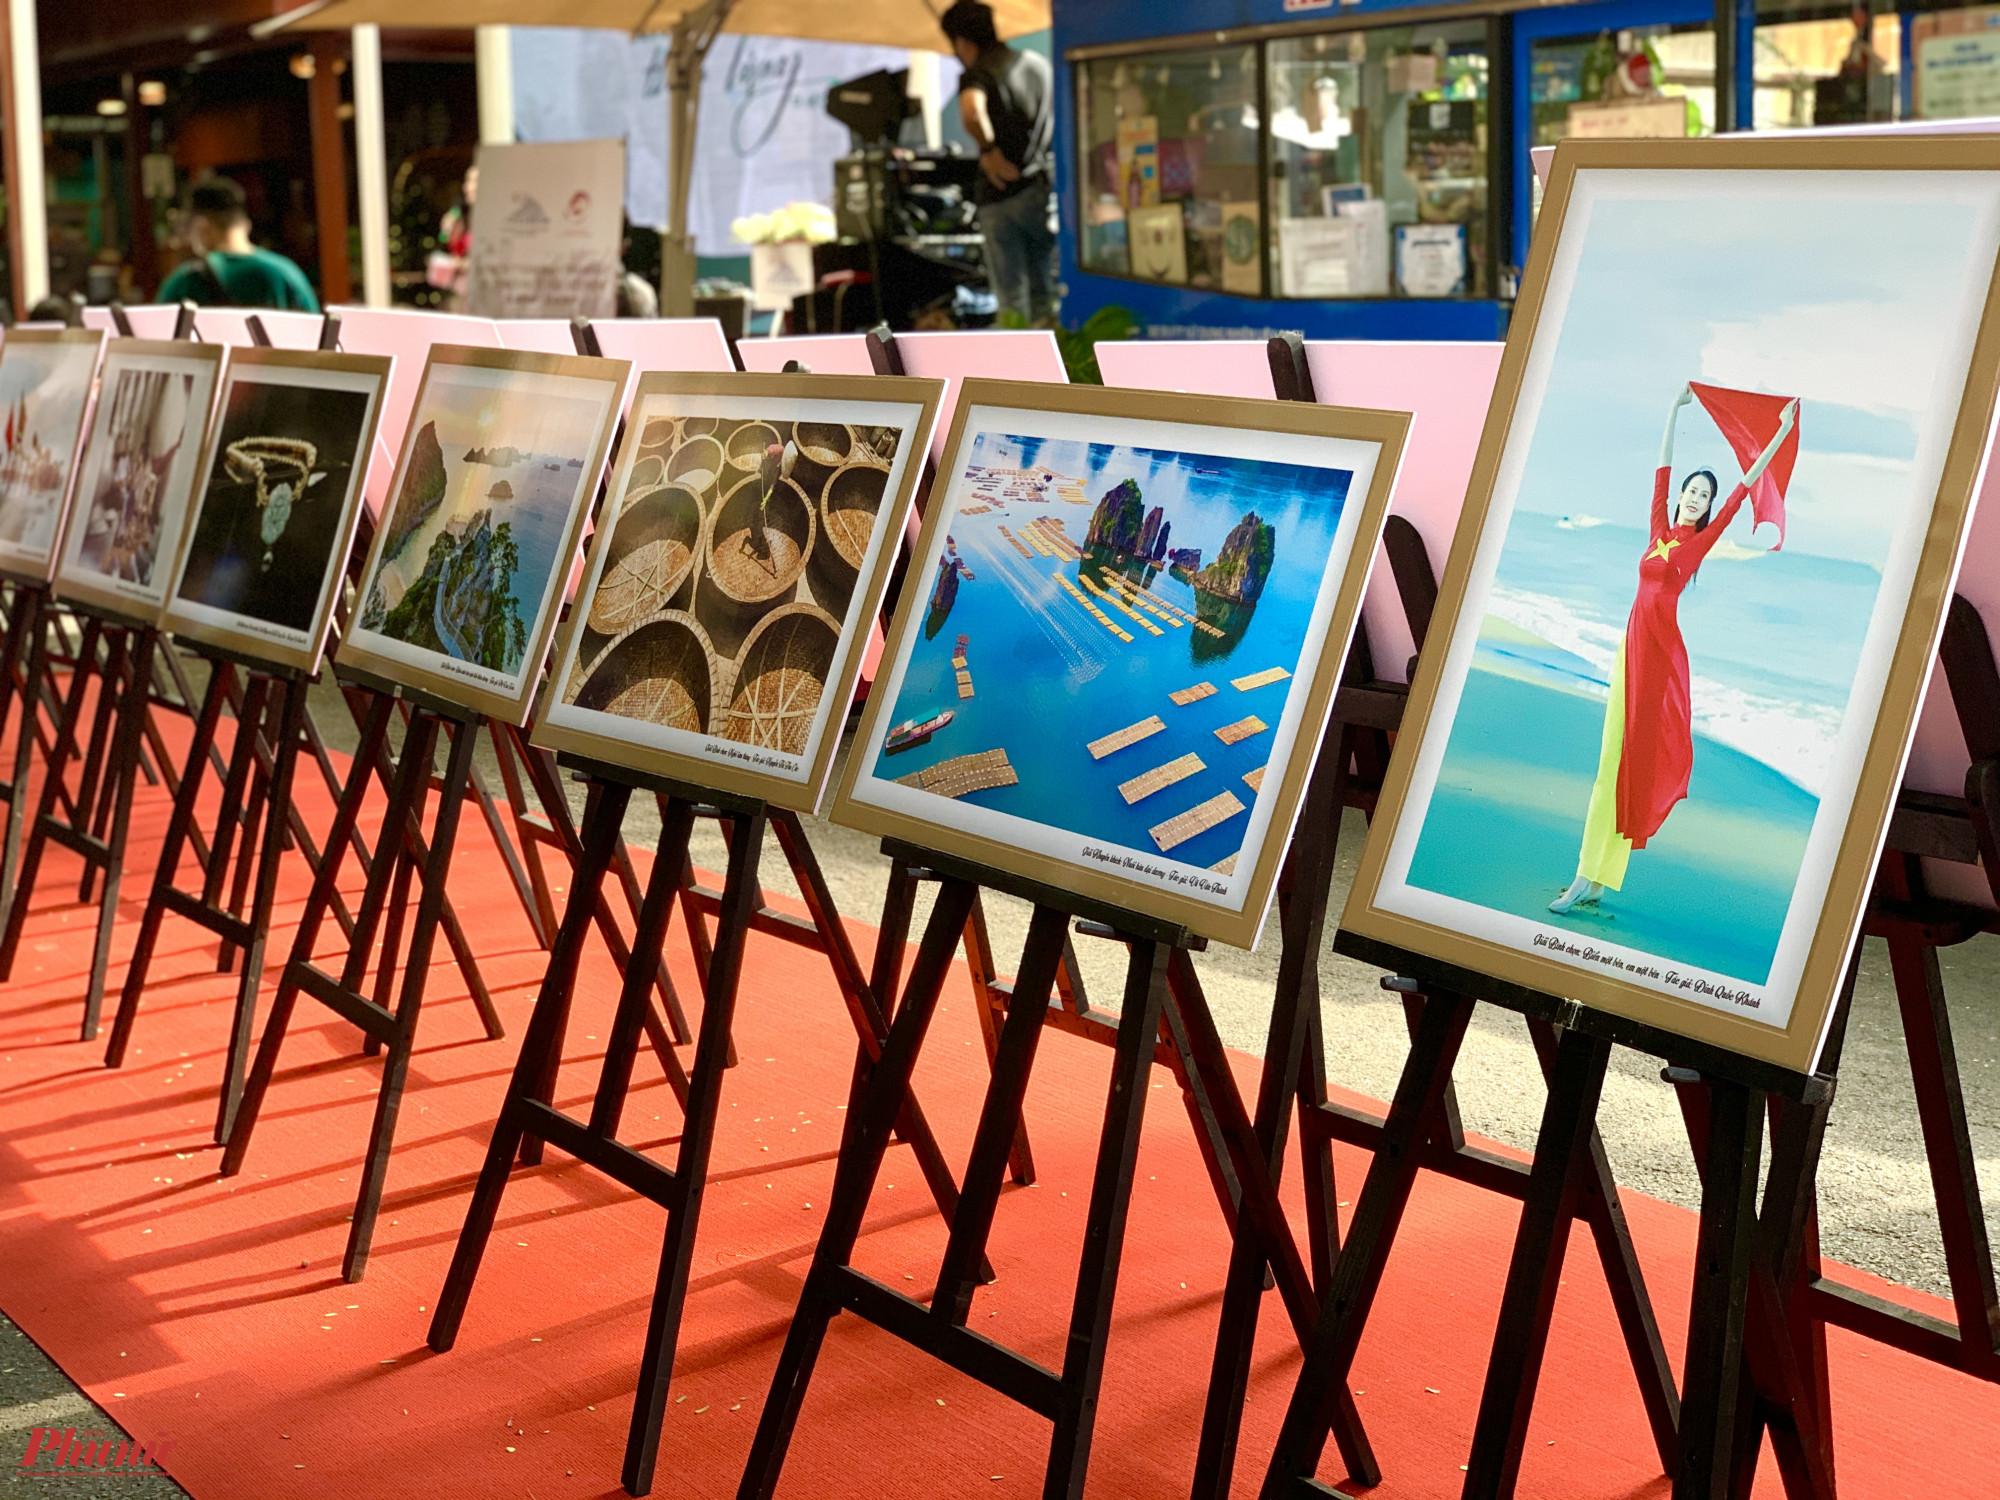 Trong khuôn khổ sự kiện, những tác phẩm từ Cuộc thi ảnh nghệ thuật chủ đề Đất nước nhìn từ biển cũng được trưng bày.